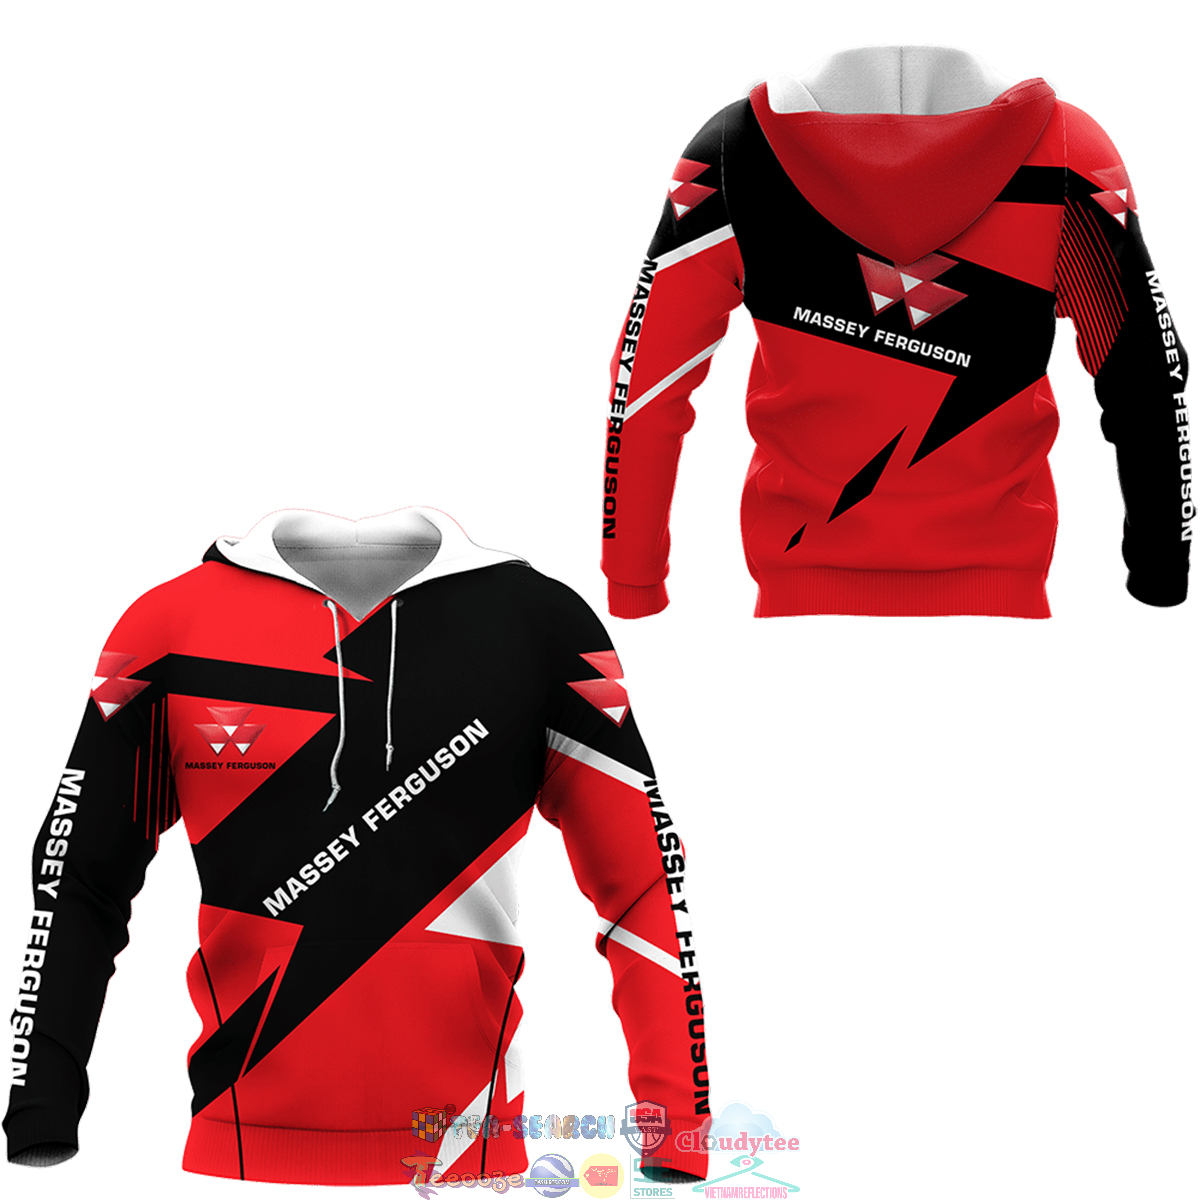 Massey Ferguson ver 7 3D hoodie and t-shirt